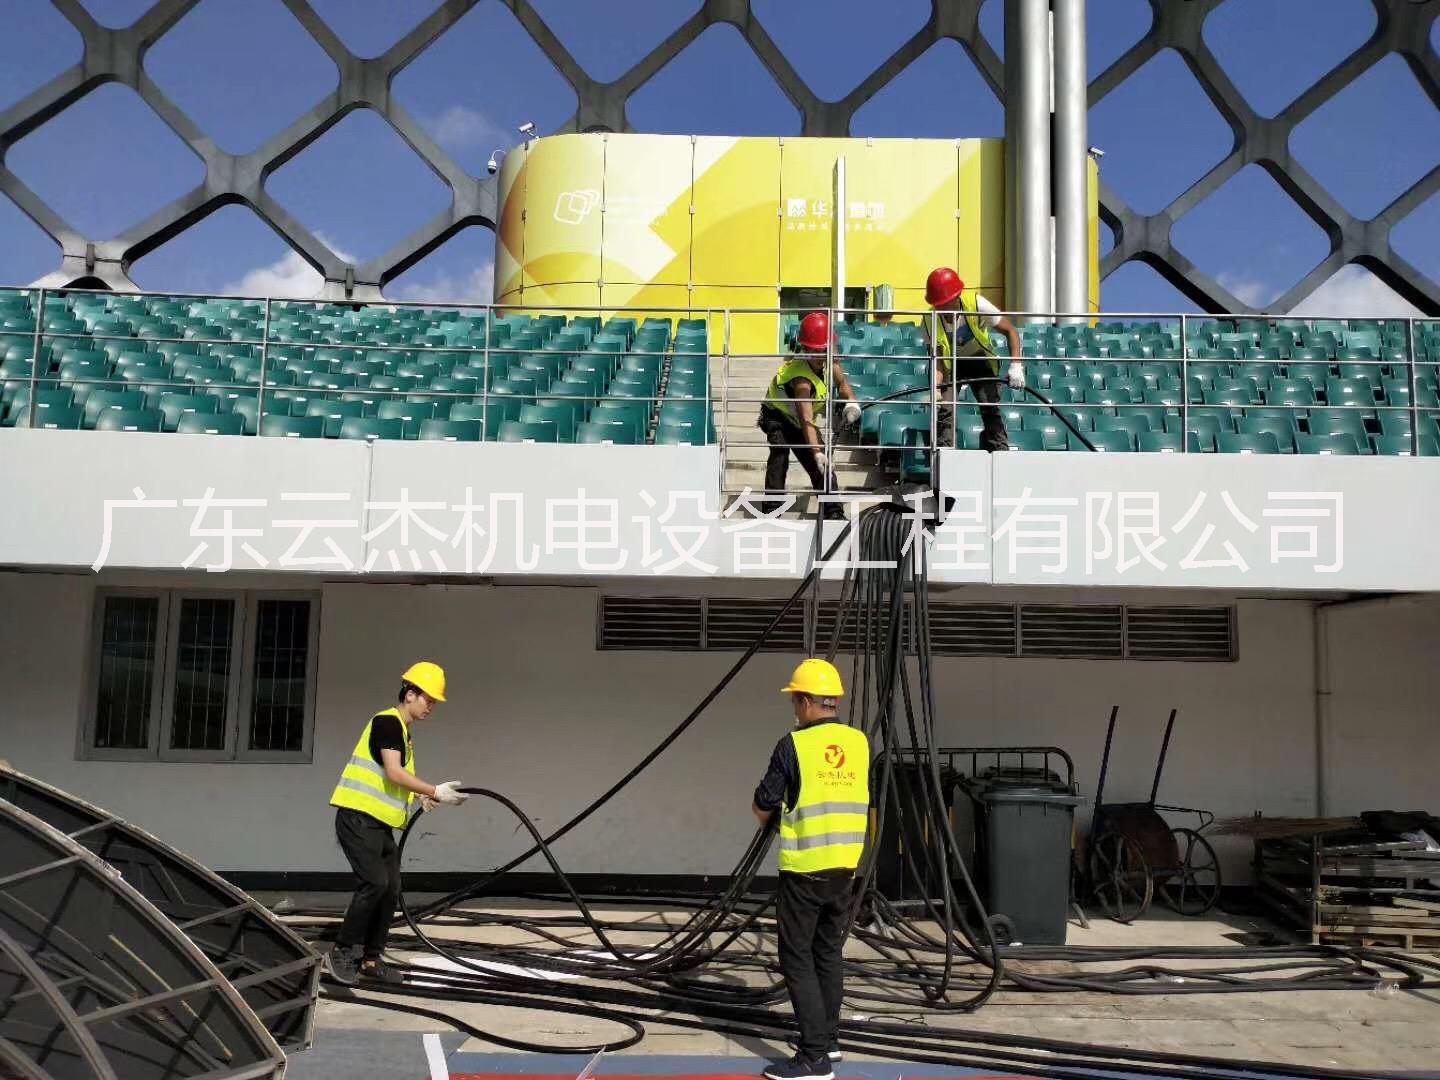 上海电缆线出租热线电话   电缆线租凭专业安装厂家 价格低  24小时施工